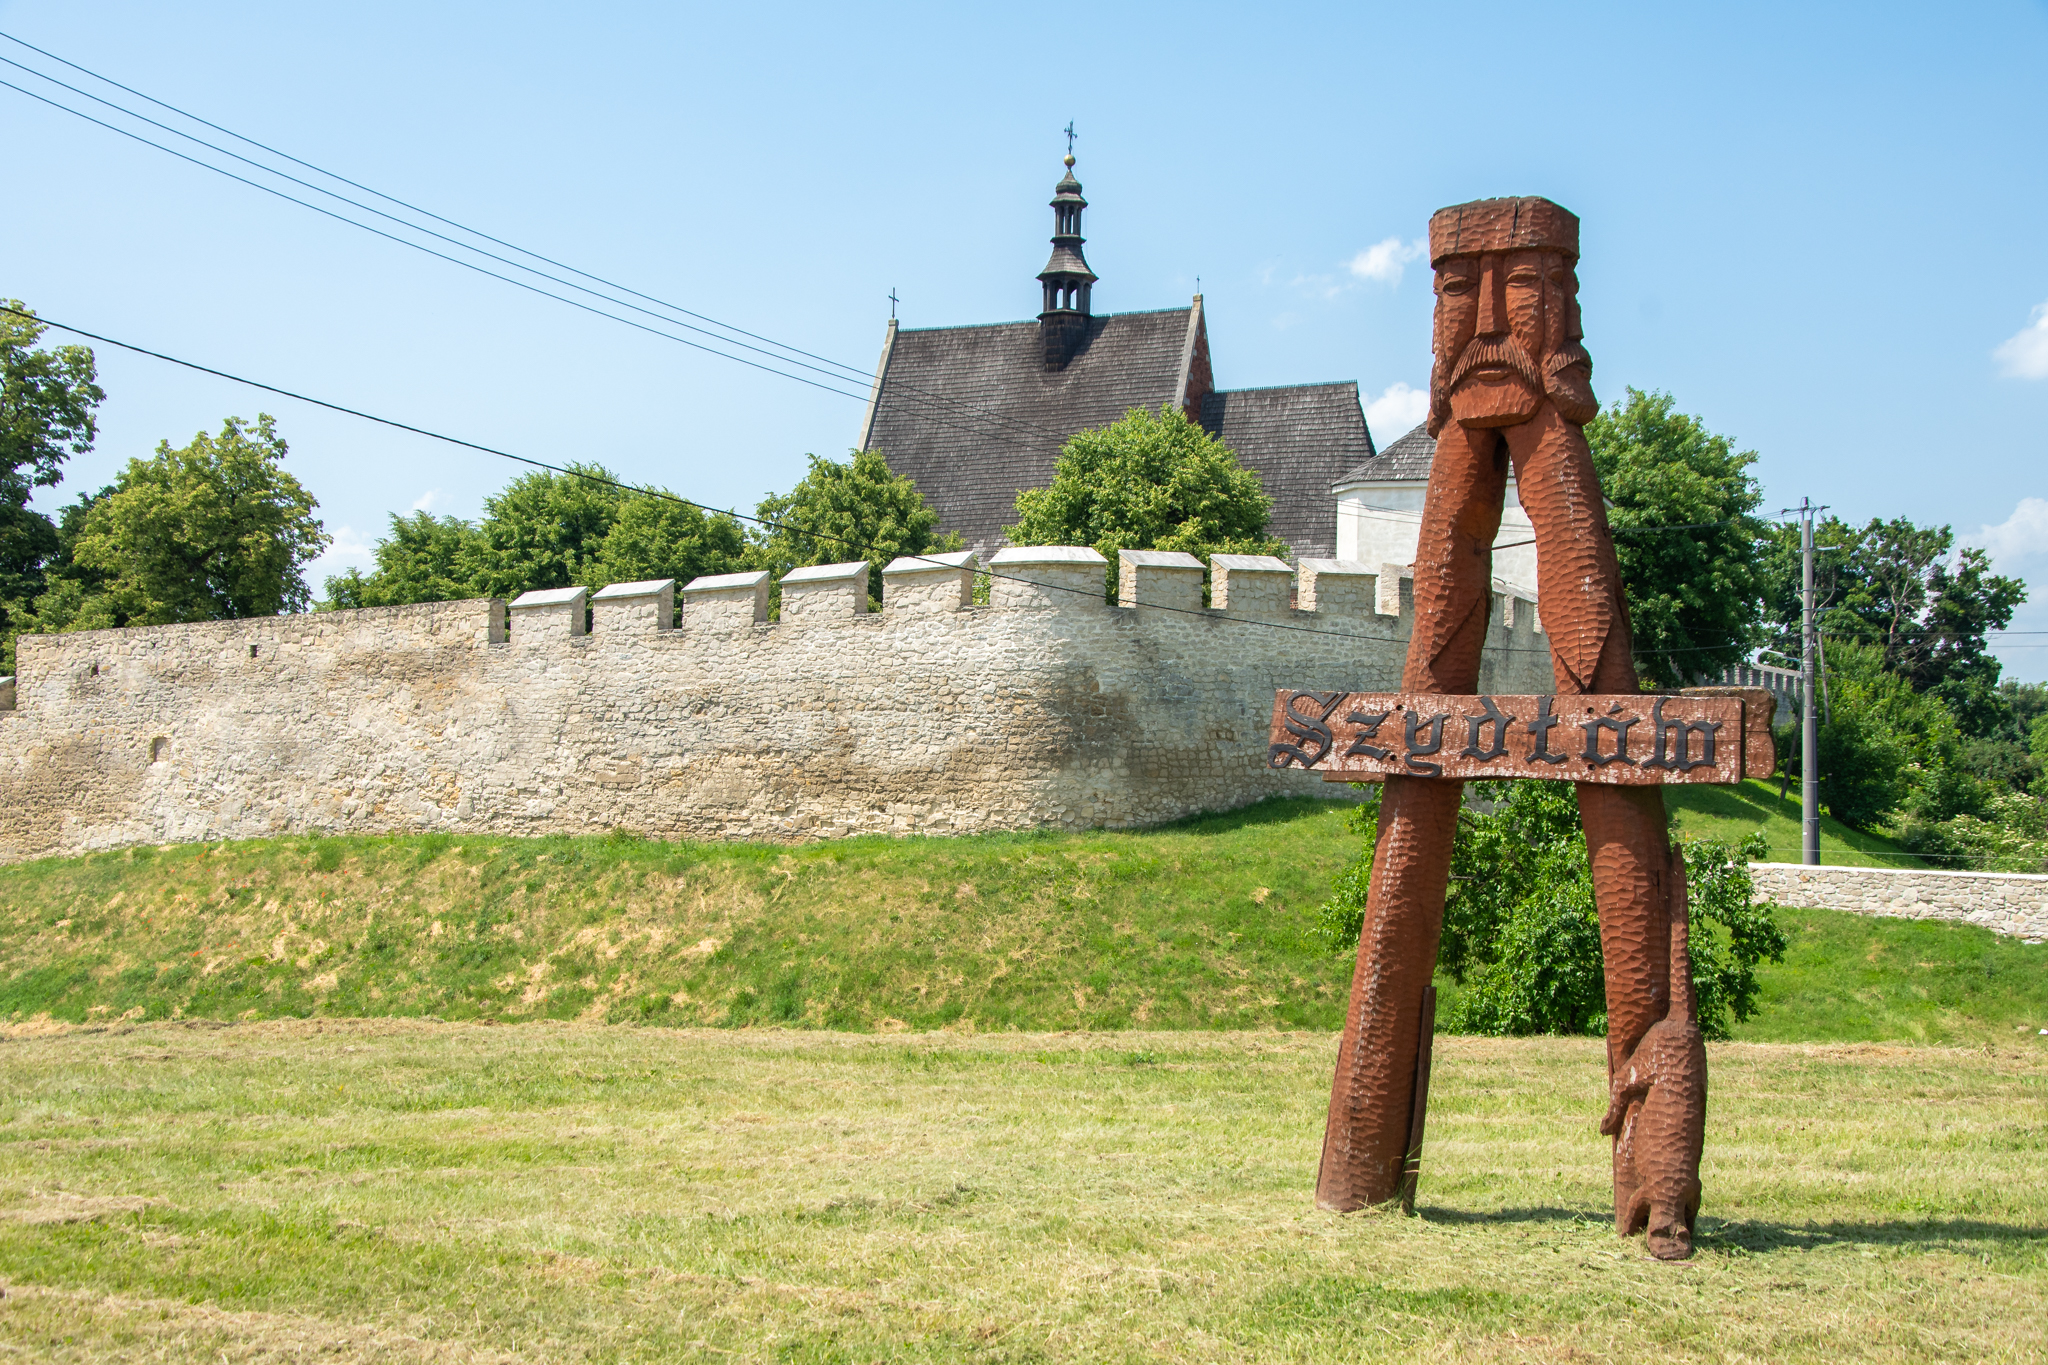 Drewniany znak z twarzą króla Kazimierza Wielkiego i znakiem "Szydłów", w oddali wskazuje na atrakcje Szydłowa - m.in. mury miejskie.